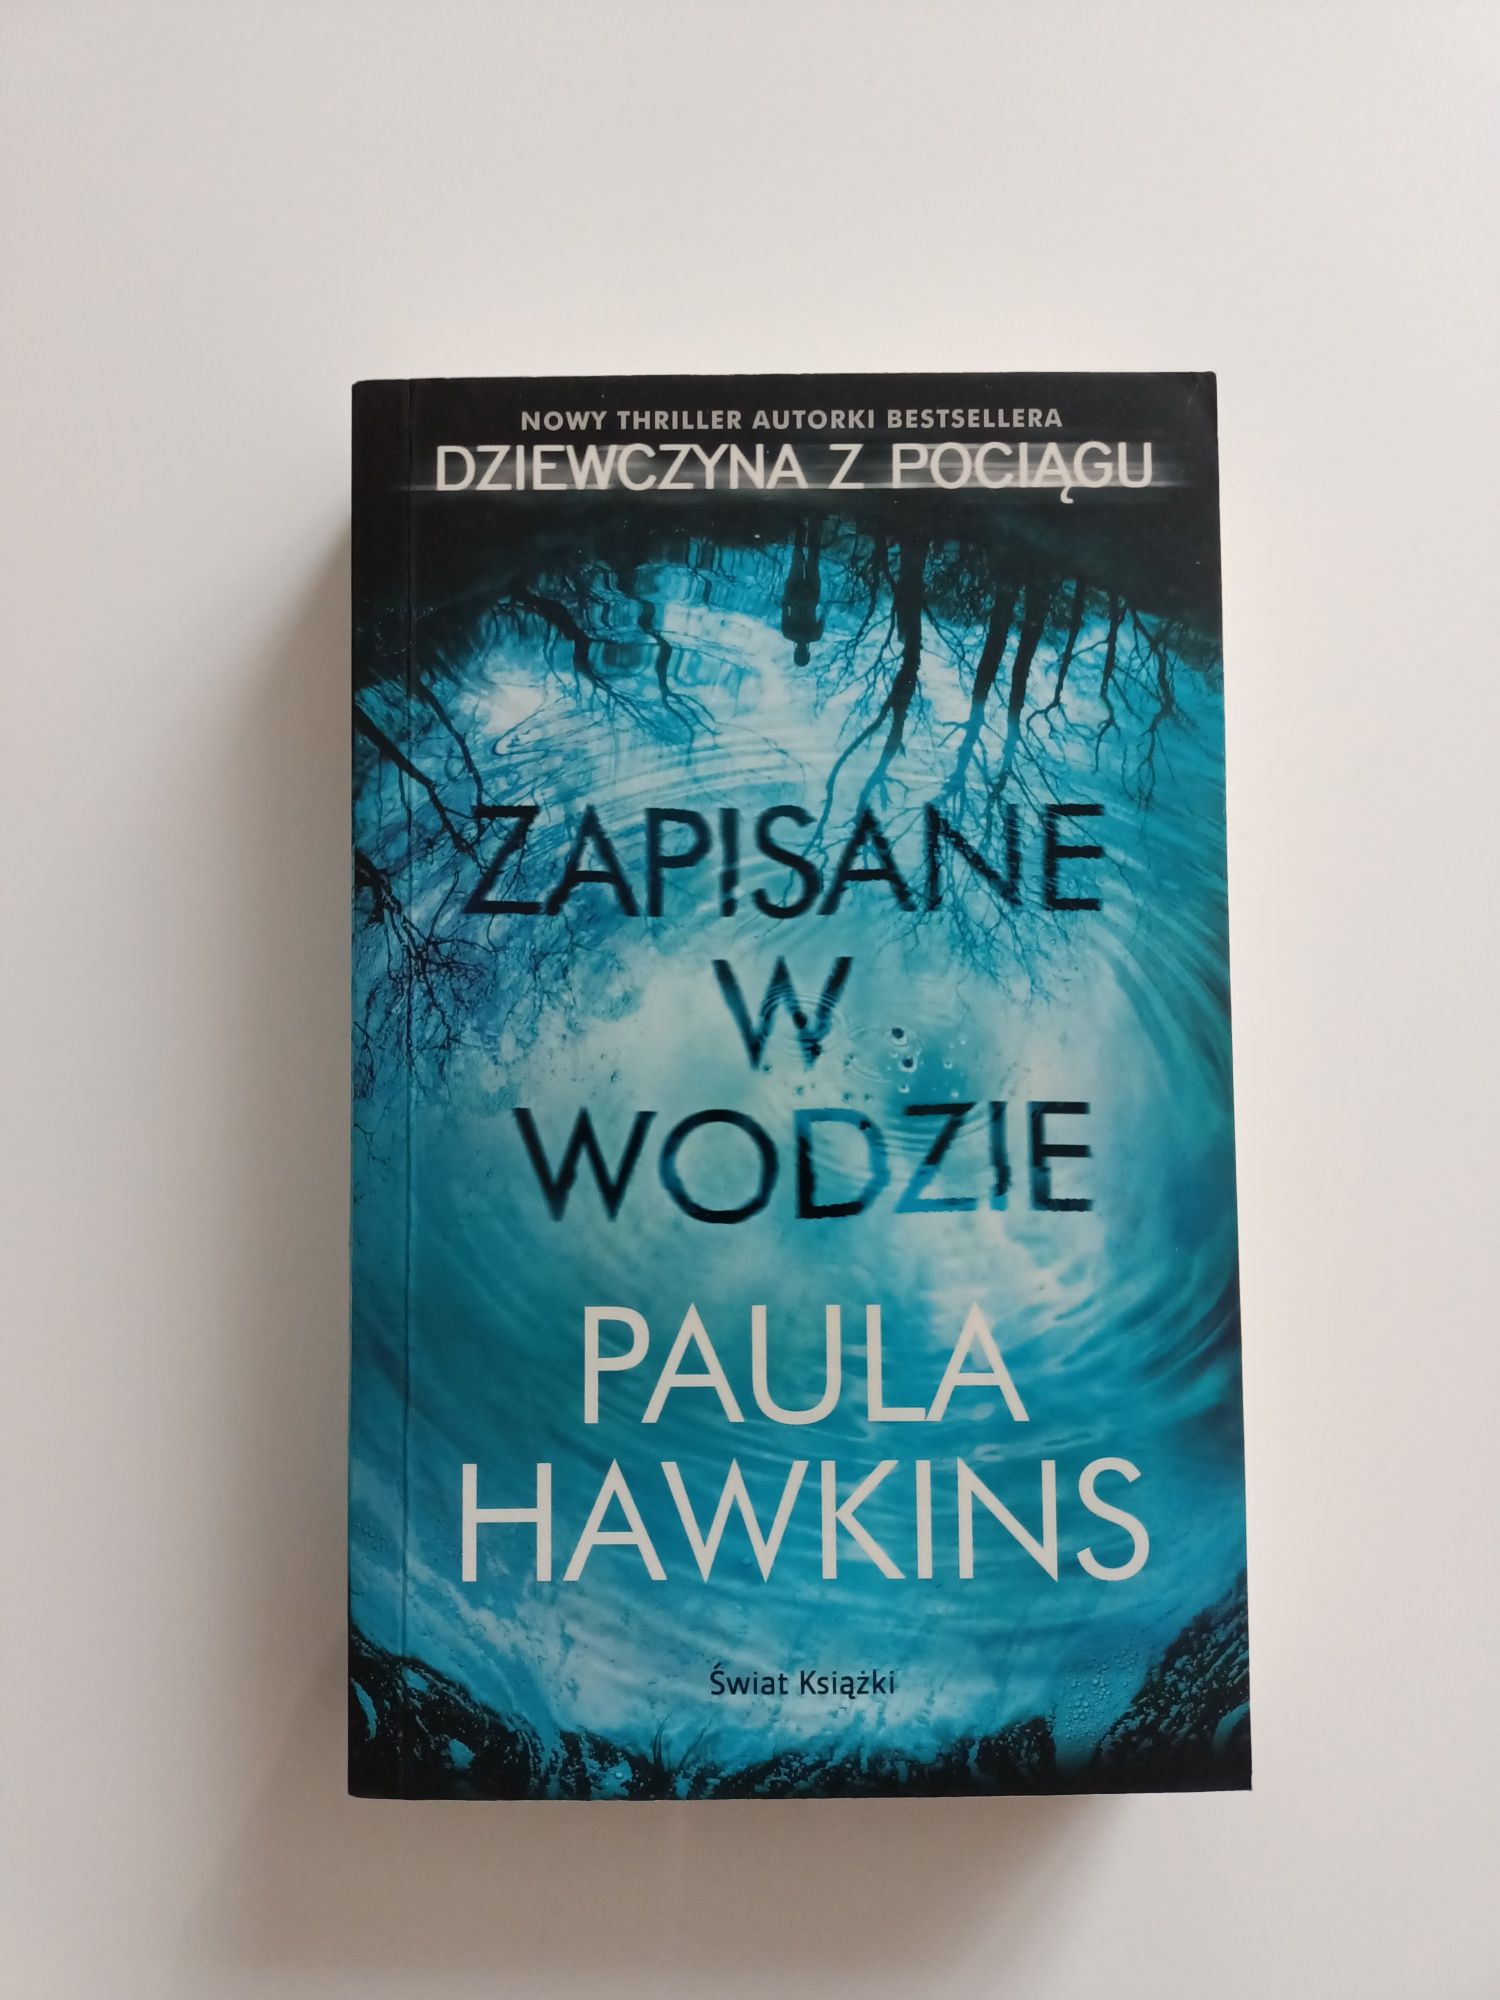 Książka, thriller "Zapisane w wodzie" Paula Hawkins